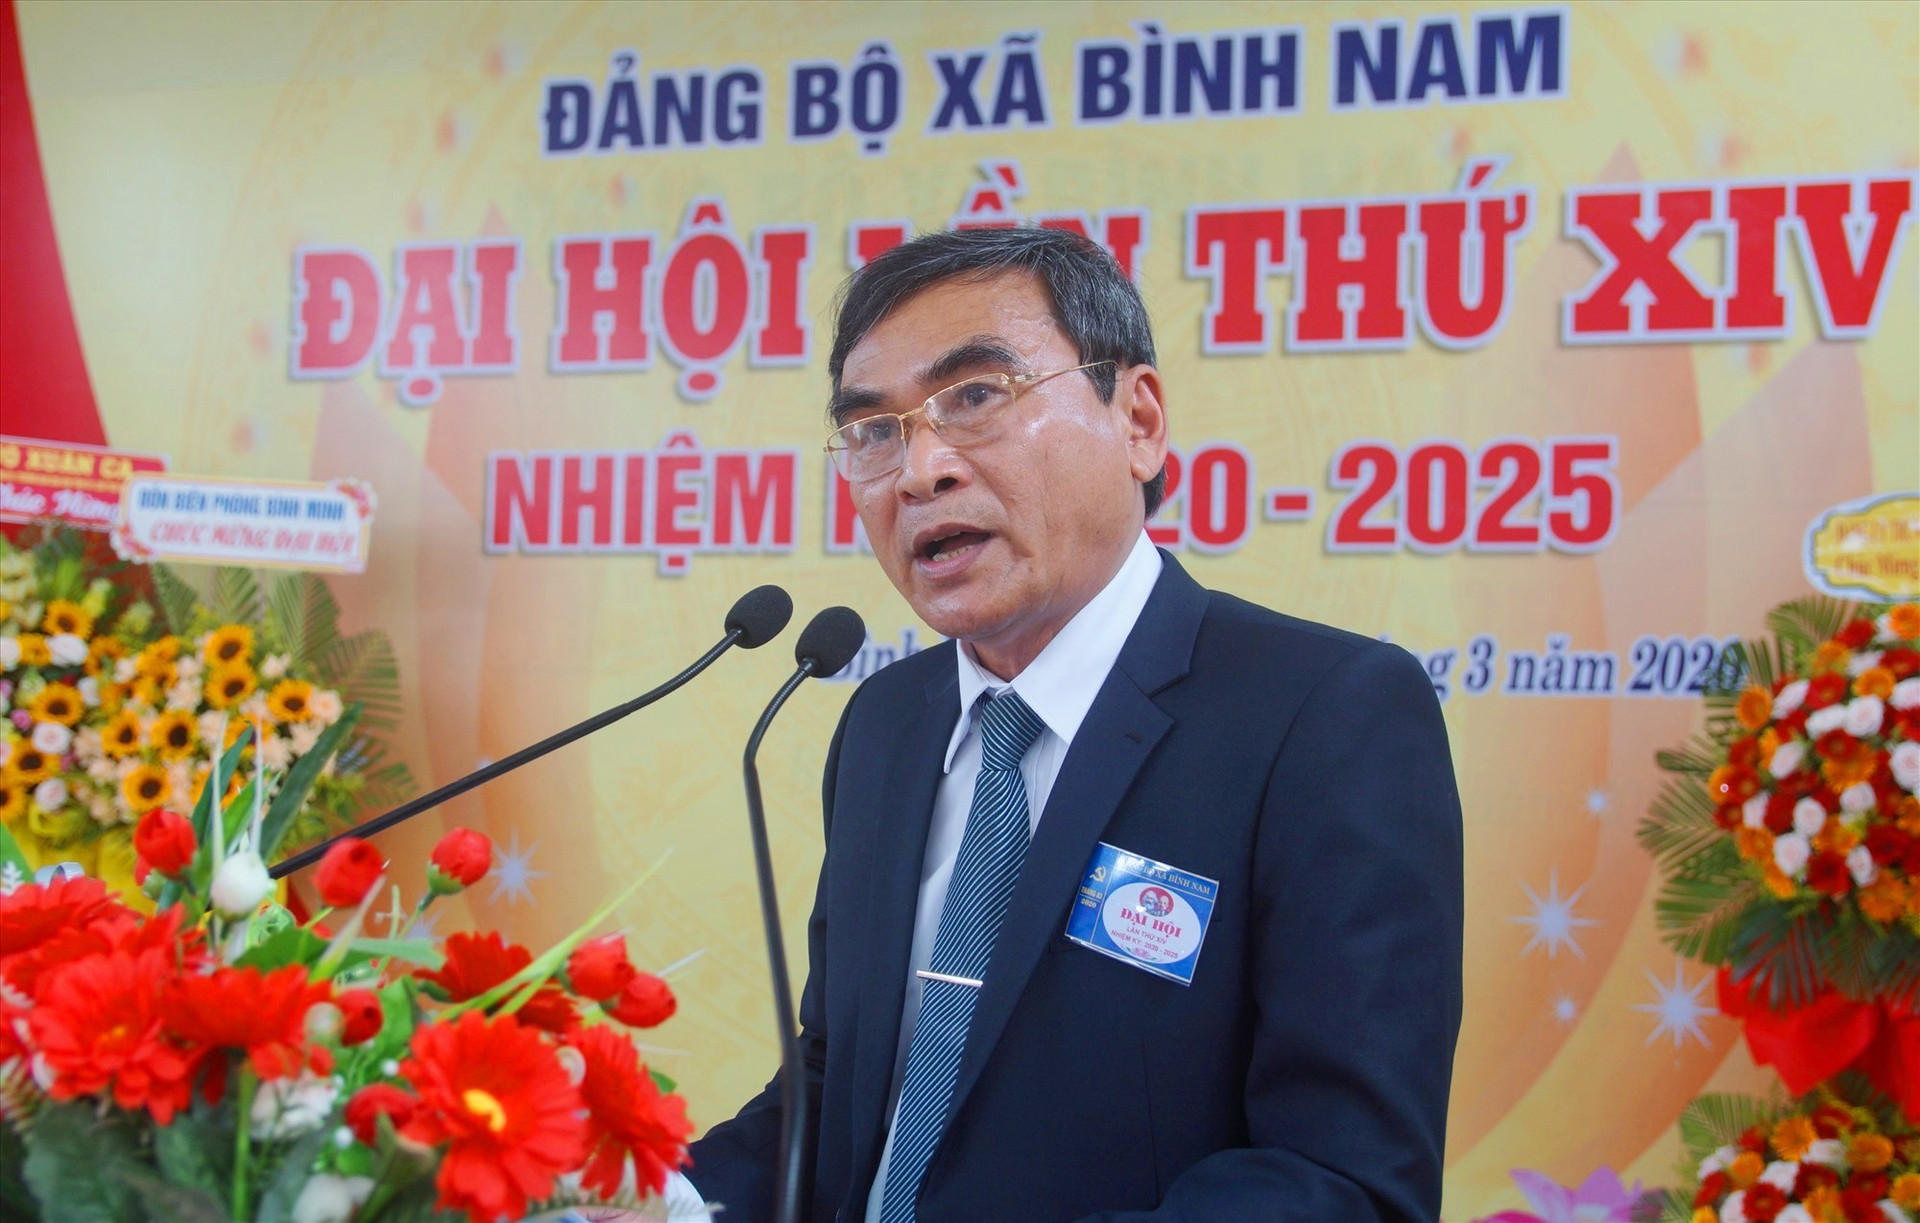 Ông Phan Công Vỹ - Bí thư Huyện ủy Thăng Bình phát biểu chỉ đạo đại hội. Ảnh: PHAN VINH